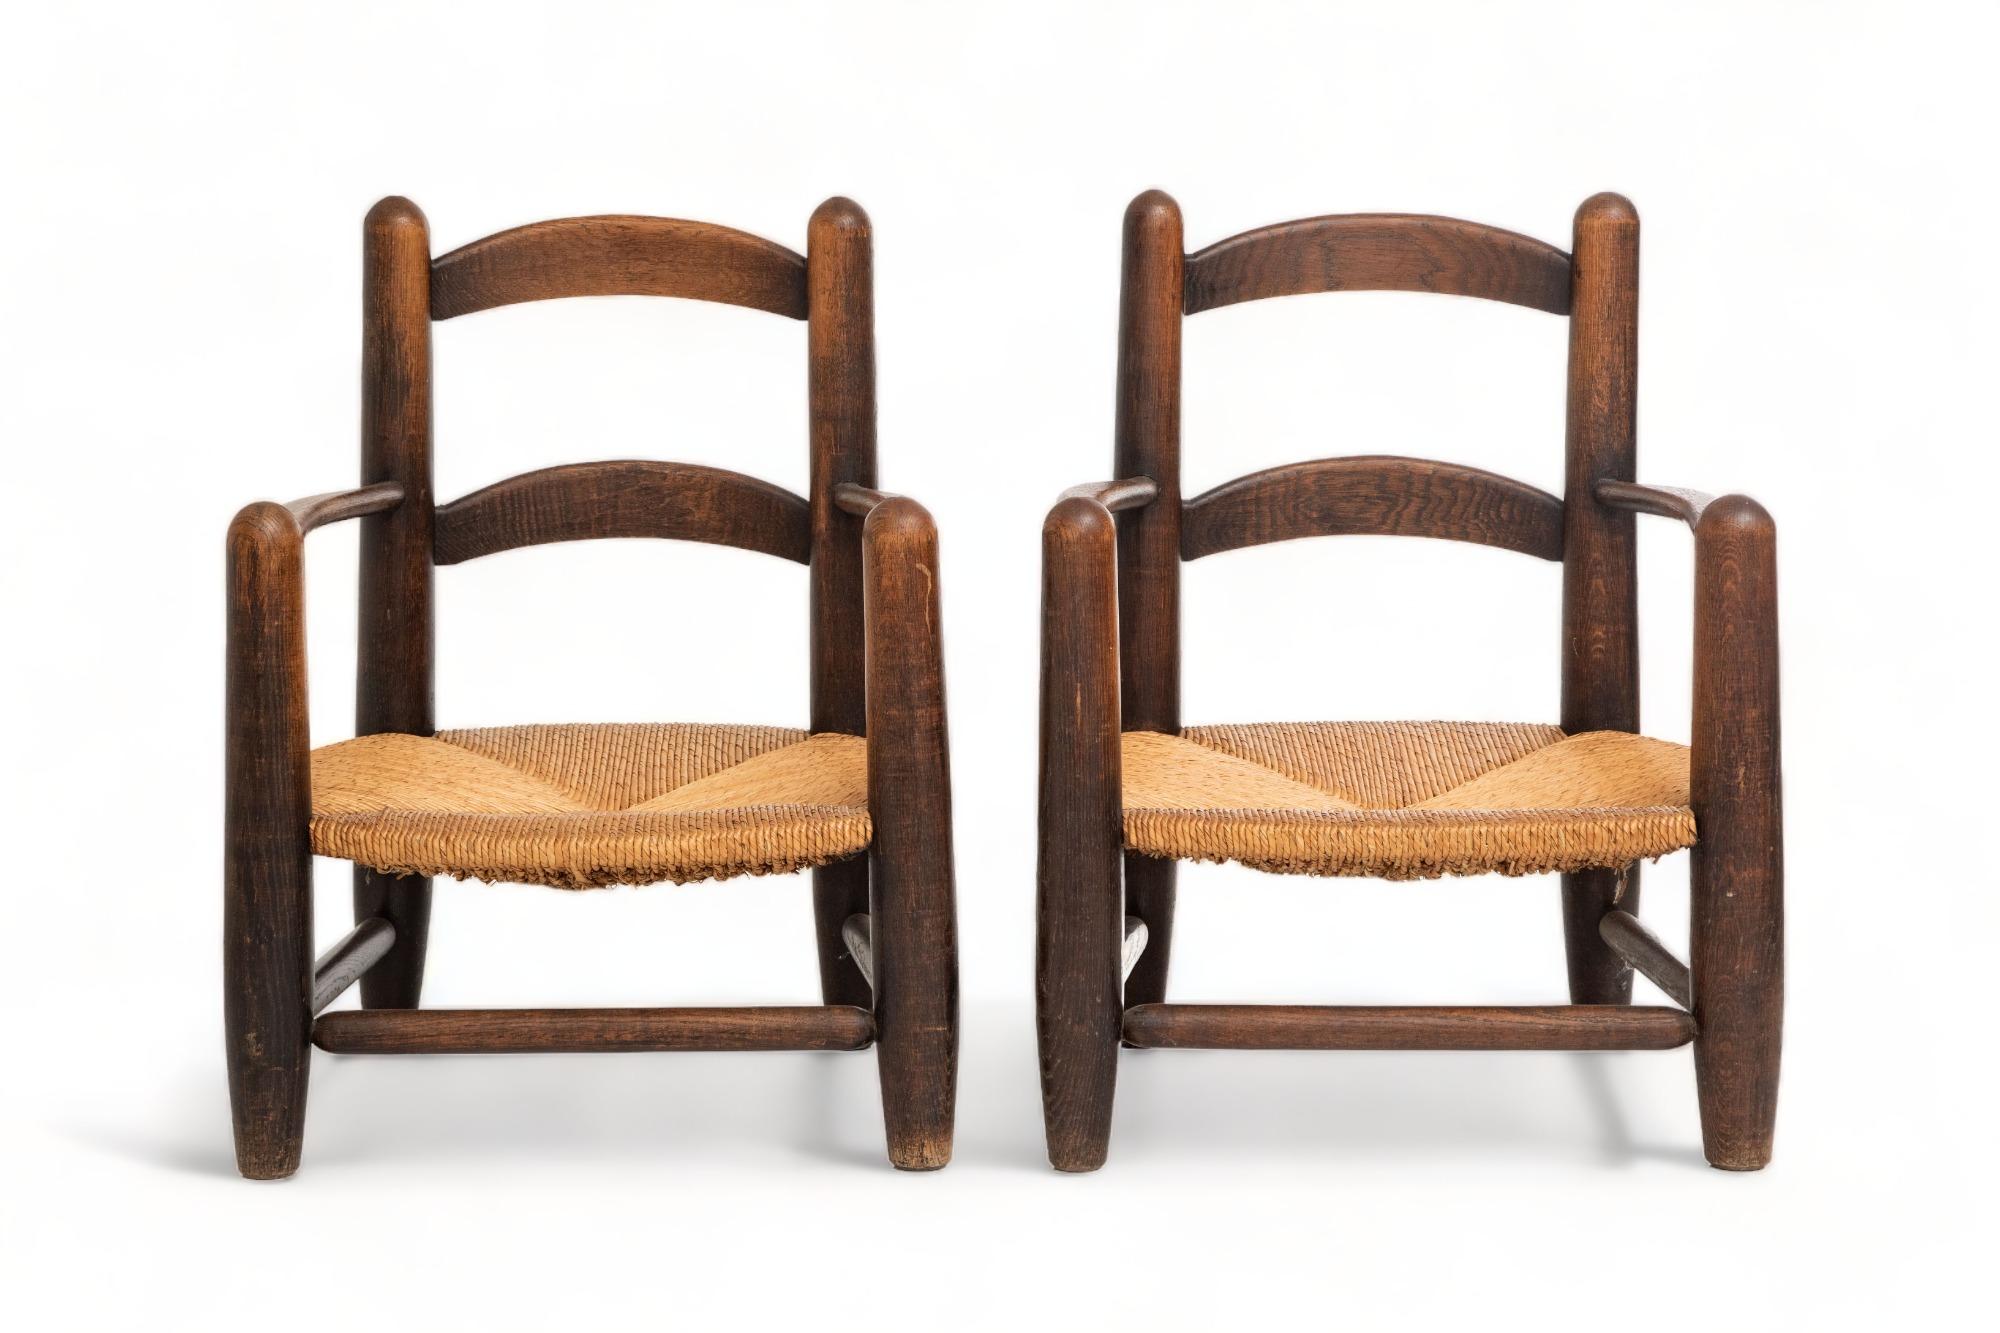 Paar niedrige Binsen-Sessel, Frankreich, 1960er Jahre
Massive gedrechselte Eiche mit hervorragender Patina und Maserung 
Handgeflochtene Binsensitze, die sich in perfektem Originalzustand befinden.
Nach dem Vorbild von Charlotte Perriand
 Verwendung